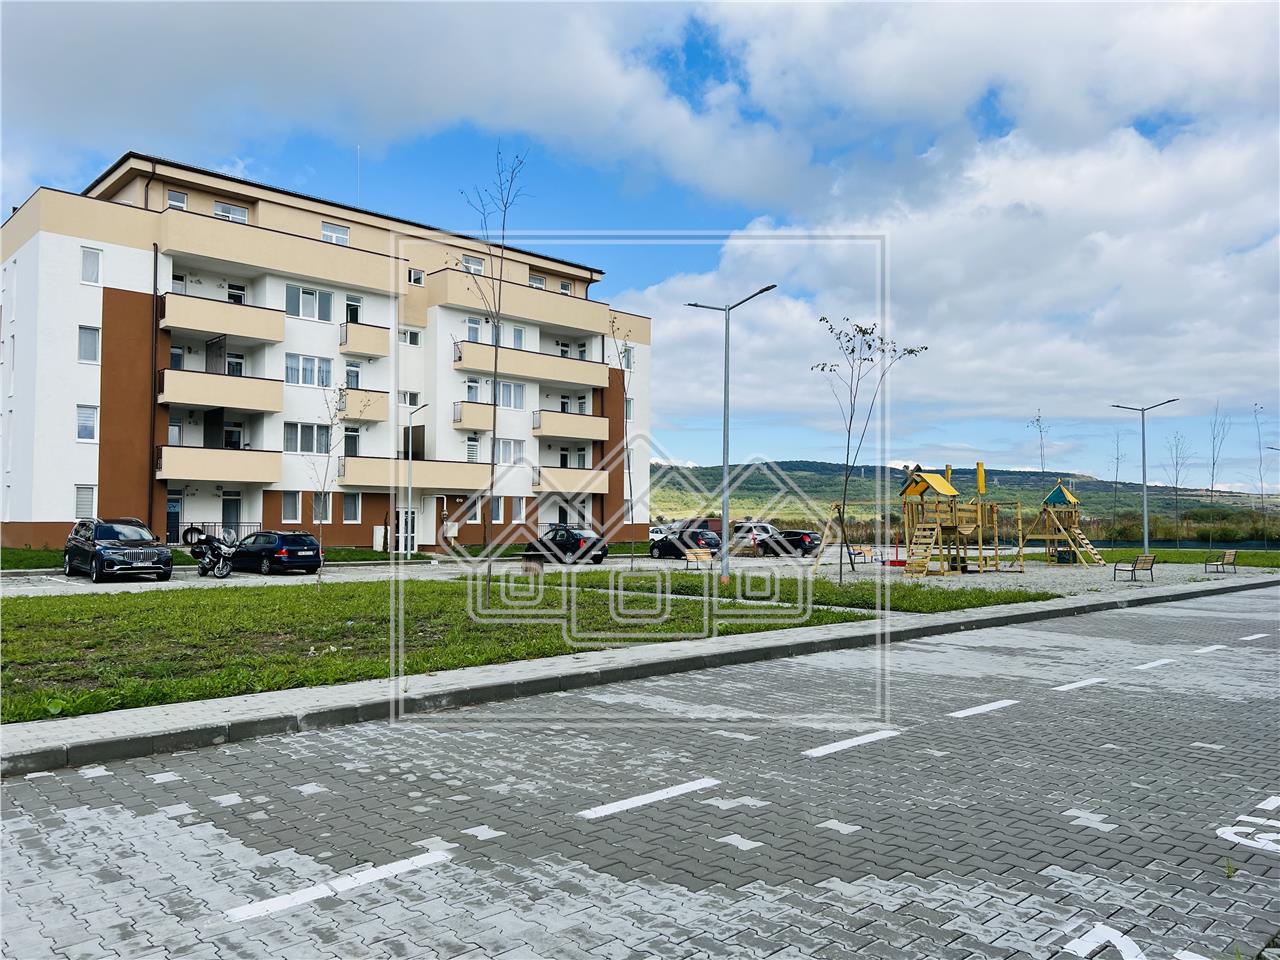 Wohnung zum Verkauf in Sibiu - v?llig freistehend - 2 Balkone